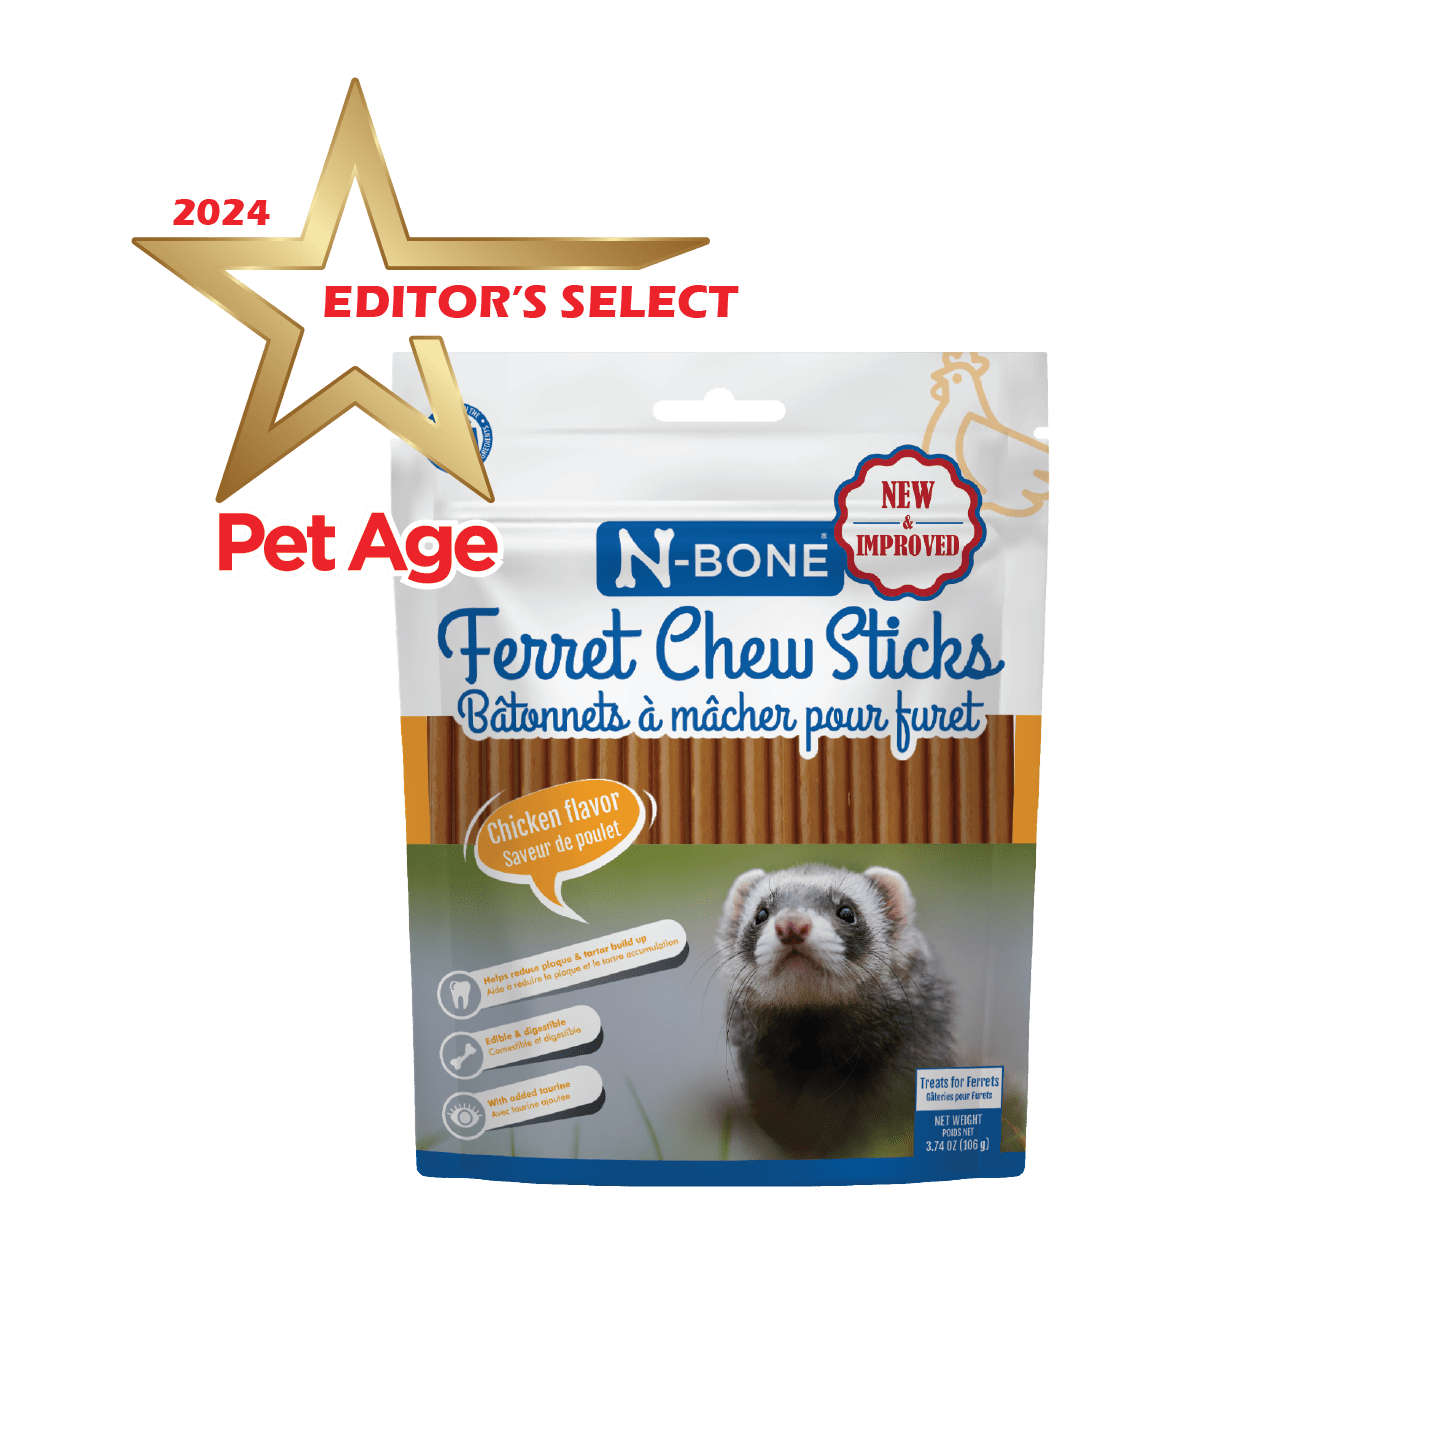 N-Bone® Ferret Chew Sticks Chicken Flavor